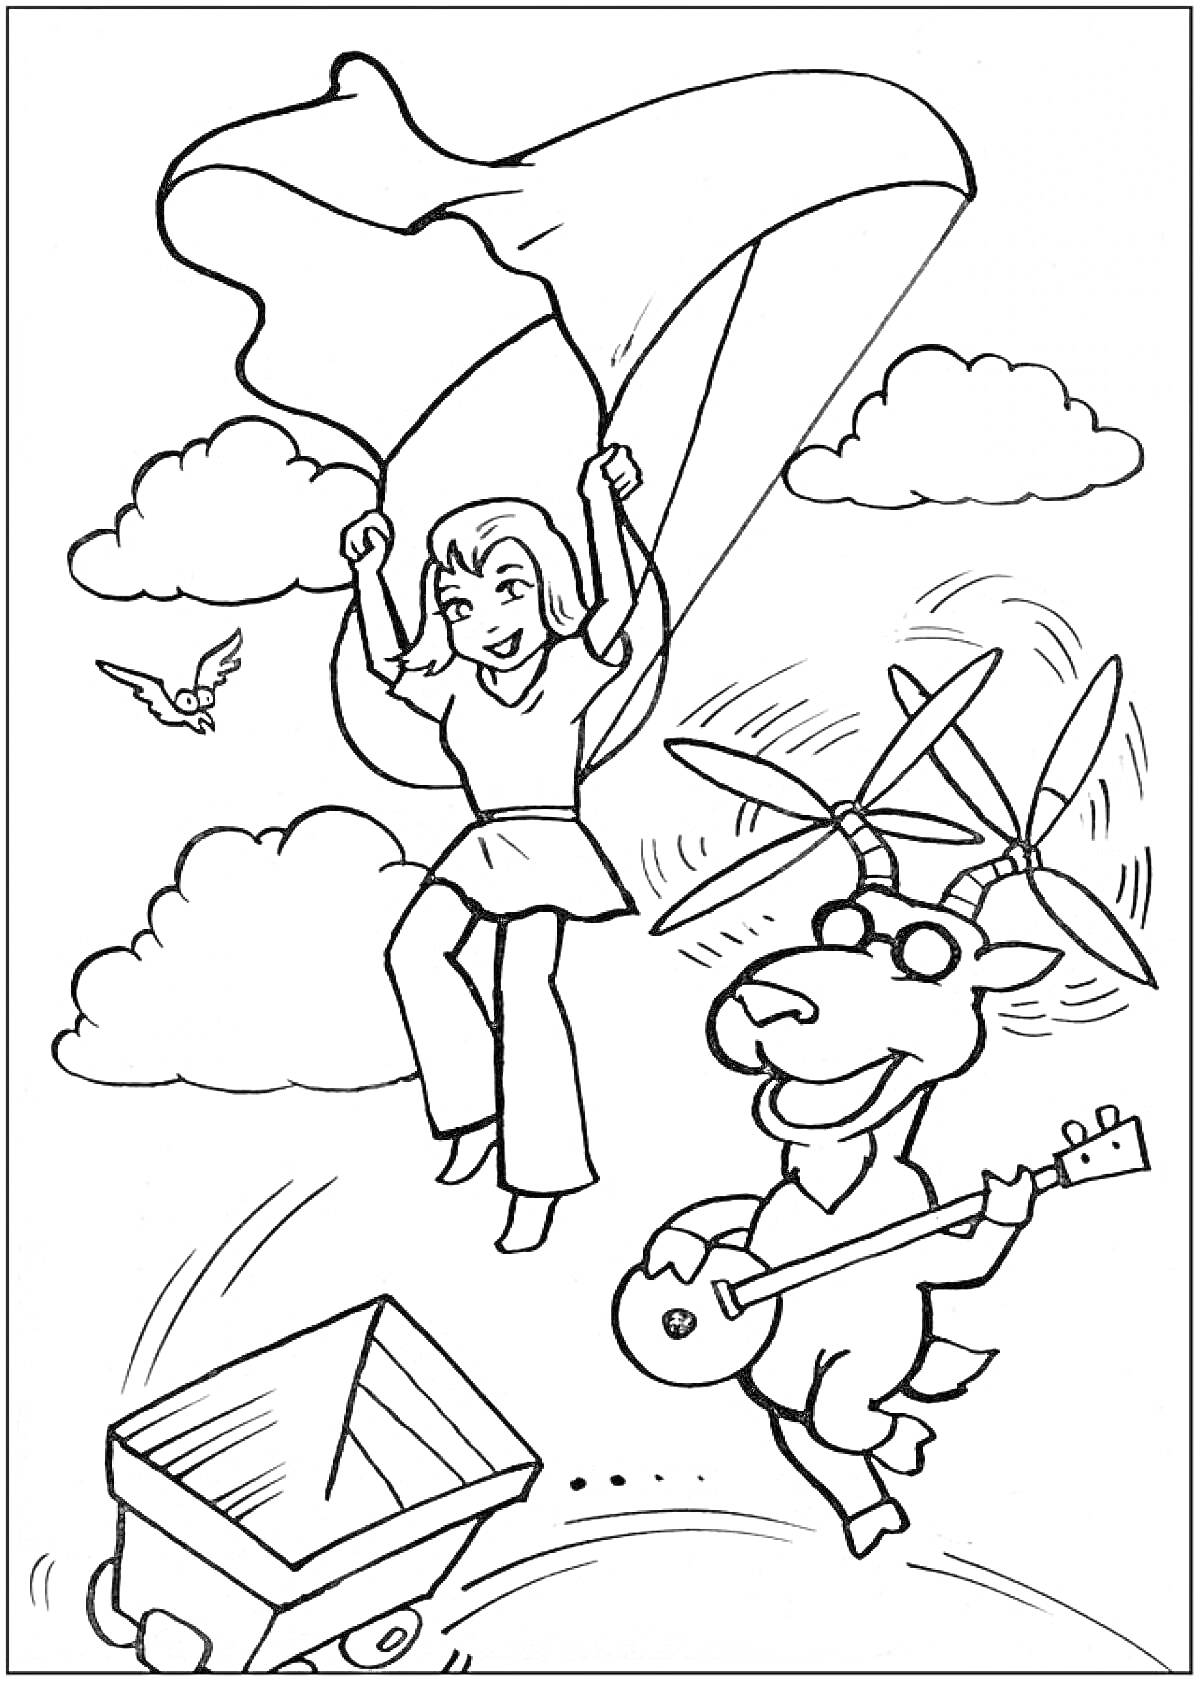 Девочка с парашютом, козел с гитарой и вертолётными лопастями, птичка, облака и тележка.